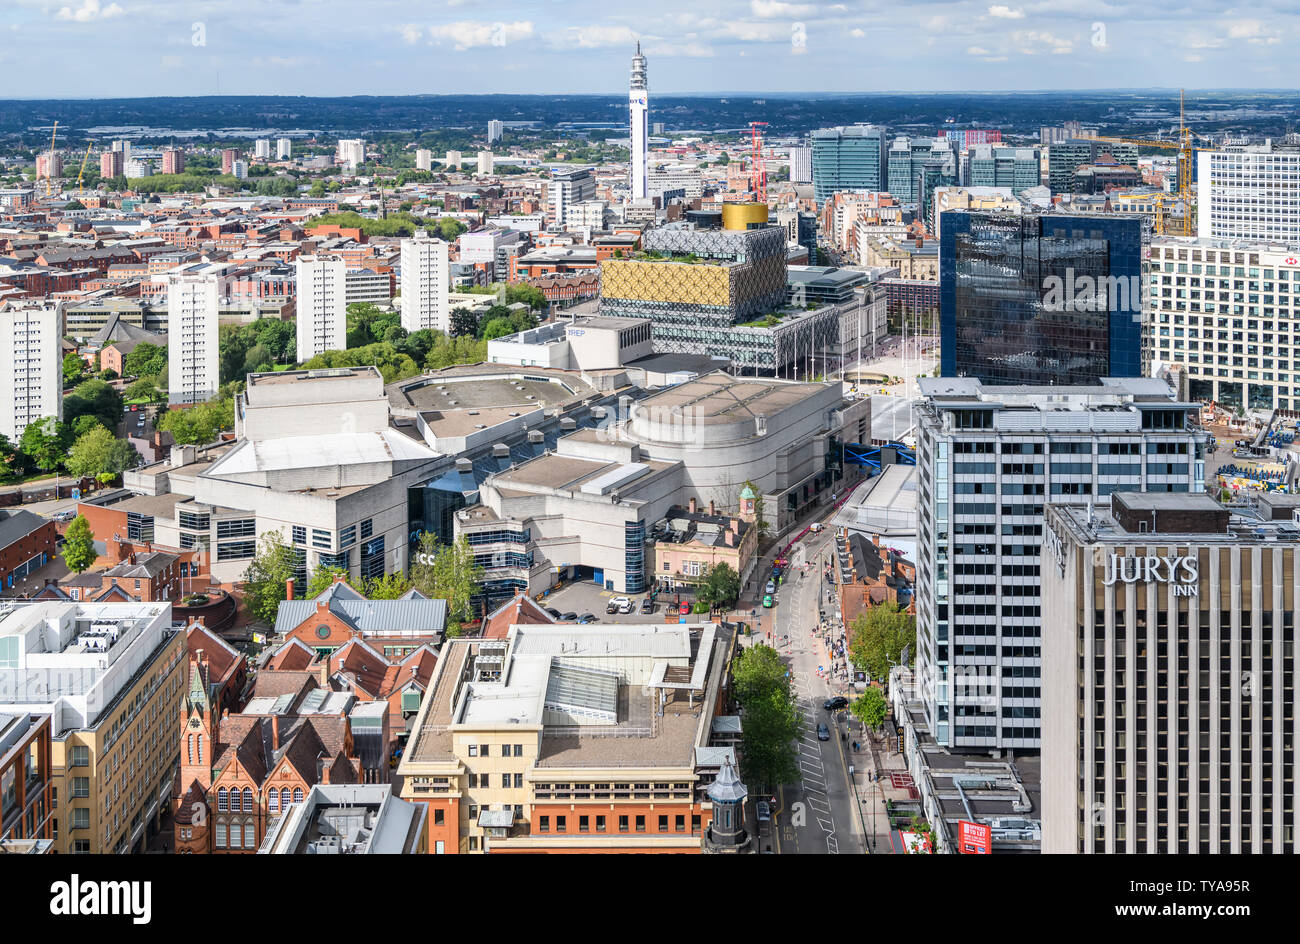 Vue aérienne de Birmingham Broad Street à la direction du centre-ville. Sur la photo, la bibliothèque, le Rep theatre, BT Tower la CPI et Symphony Hall. Banque D'Images